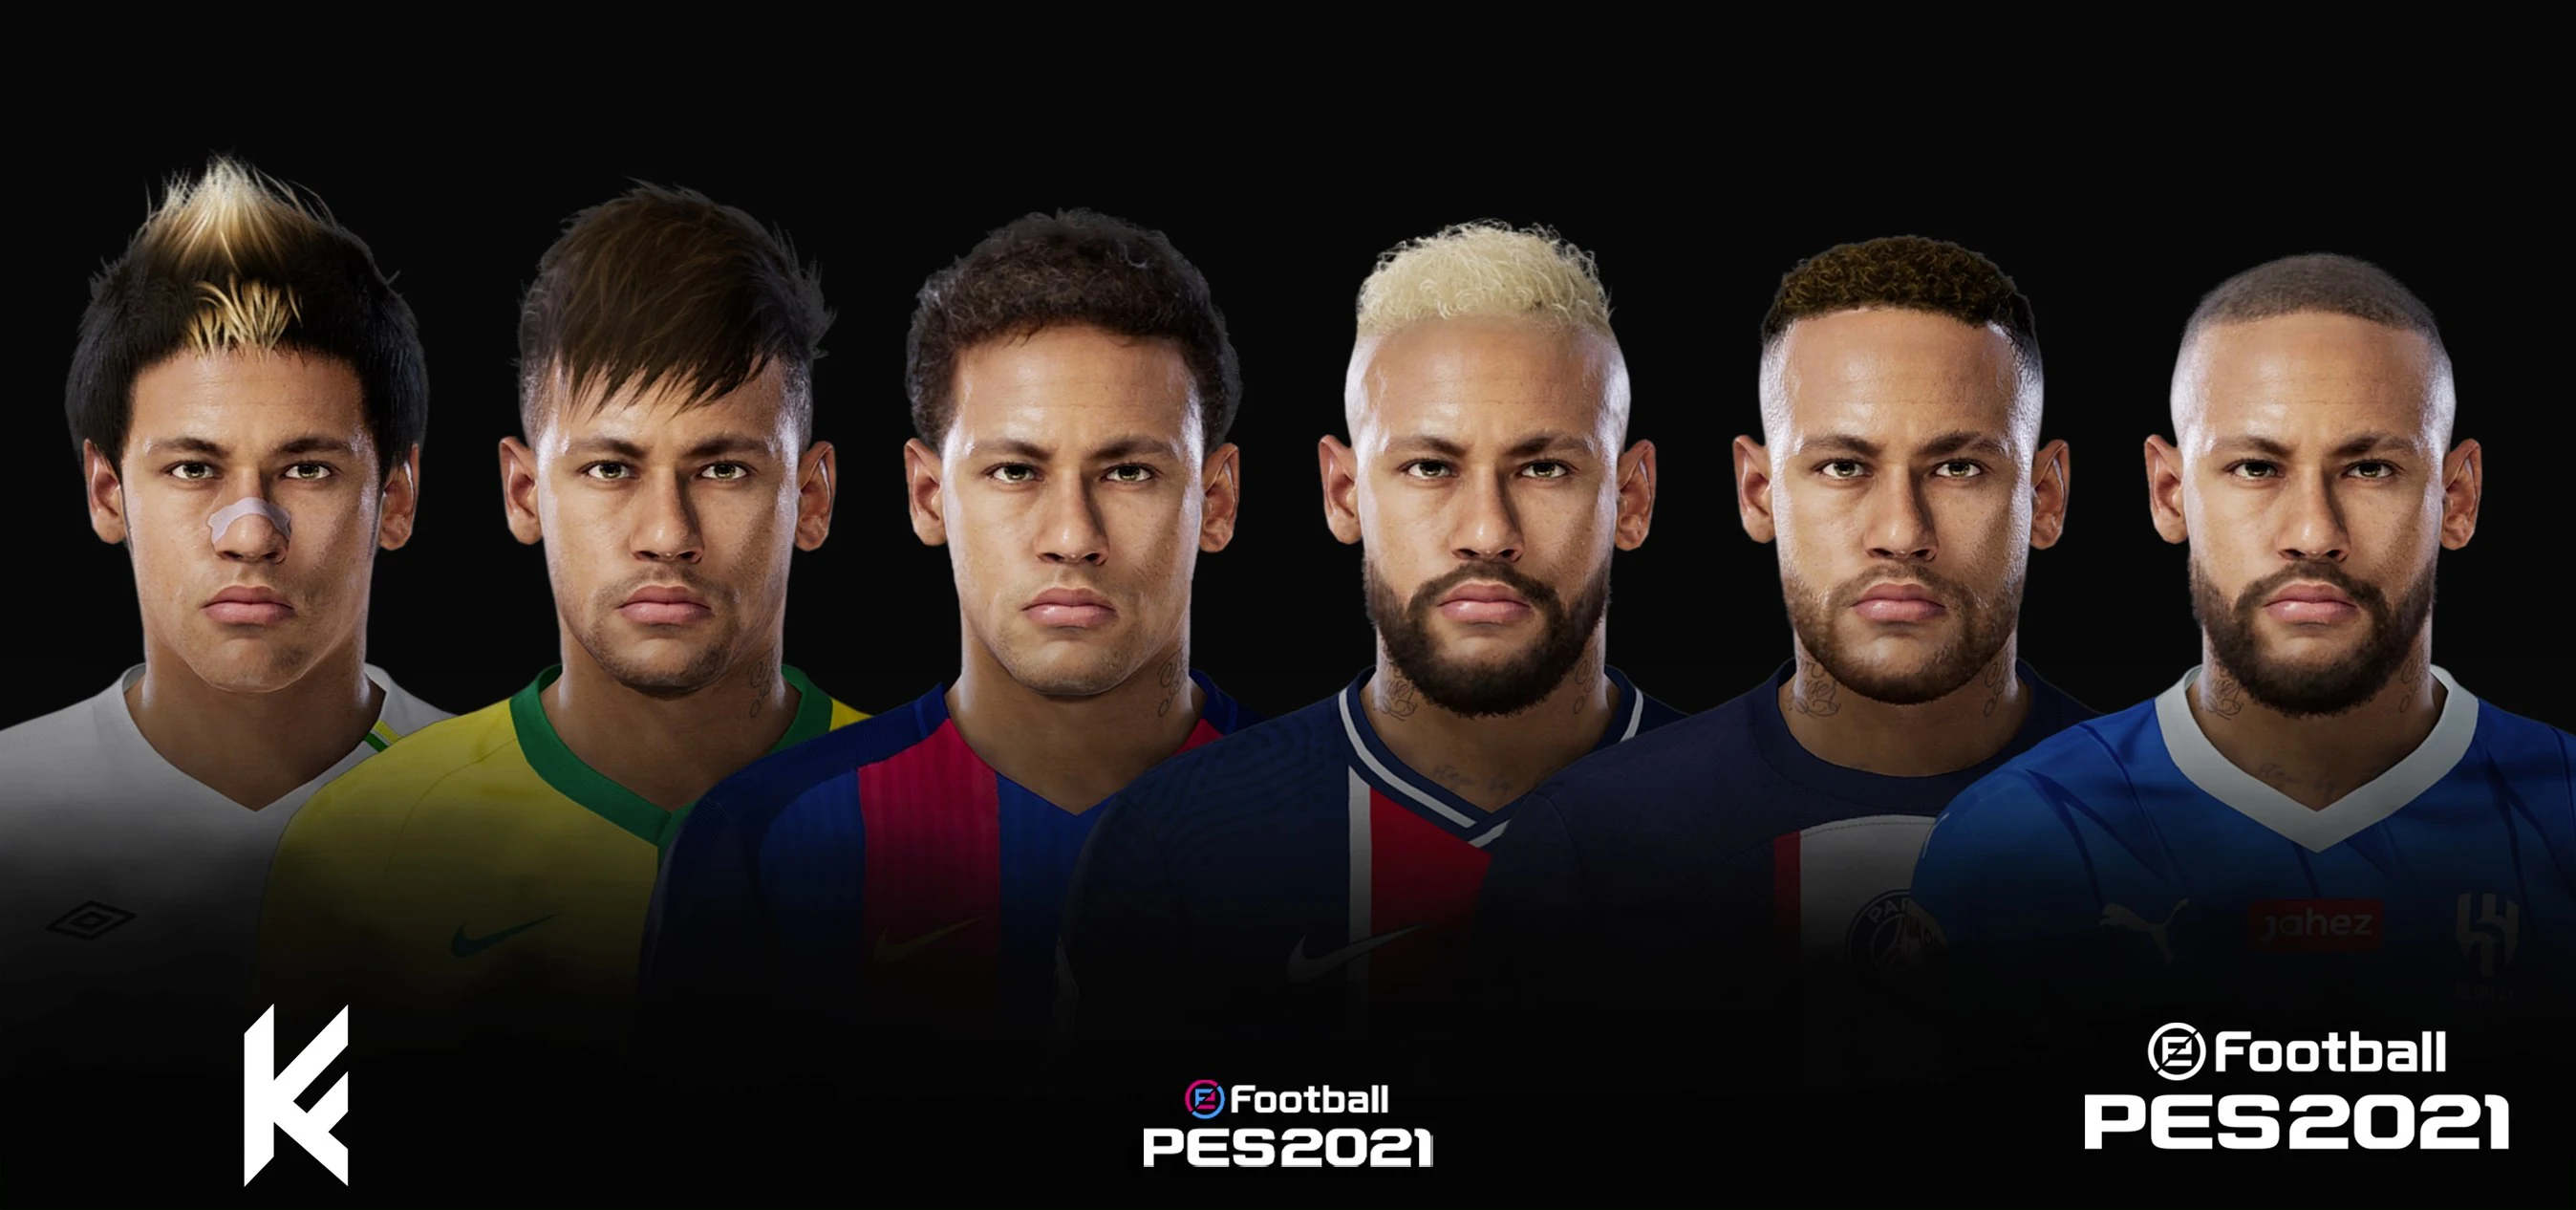 PES 2021 Neymar Jr Facepack